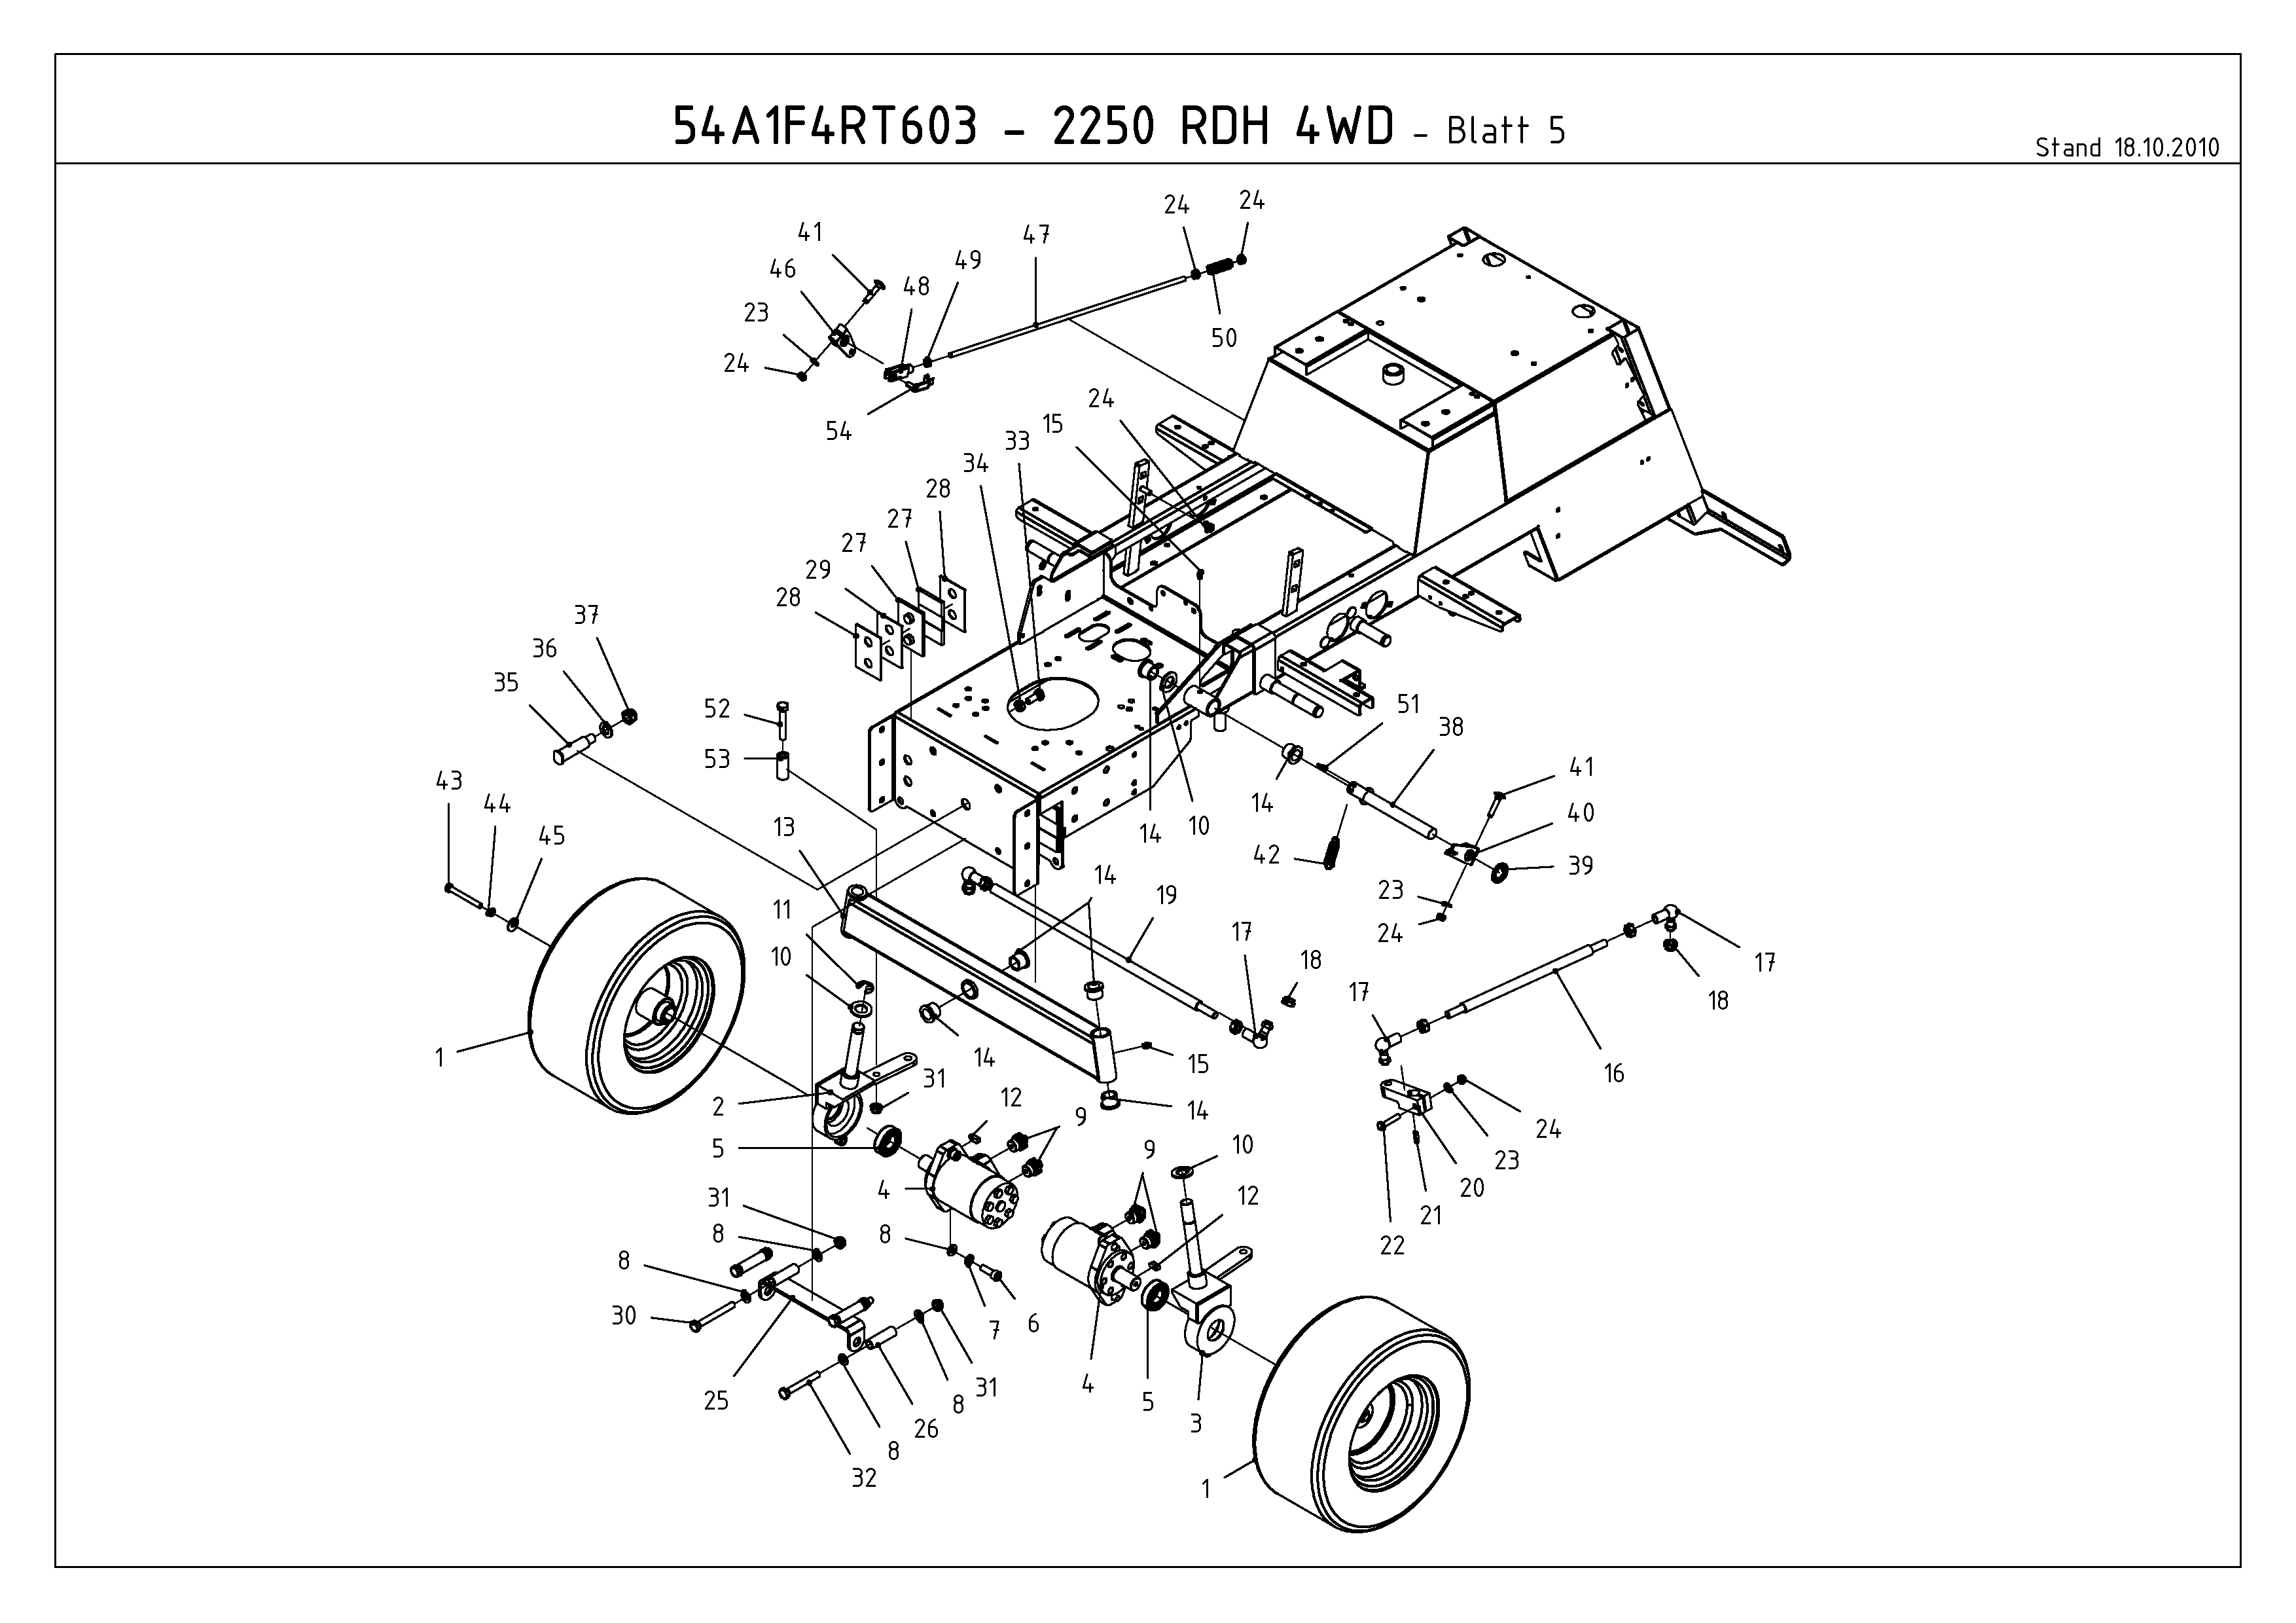 Cub Cadet, Kompakttraktoren, CC 2250 RDH 4 WD, 54A1F4RT603 (2011), Räder vorne, Vorderachse, MTD Ersatzteil-Zeichnungen